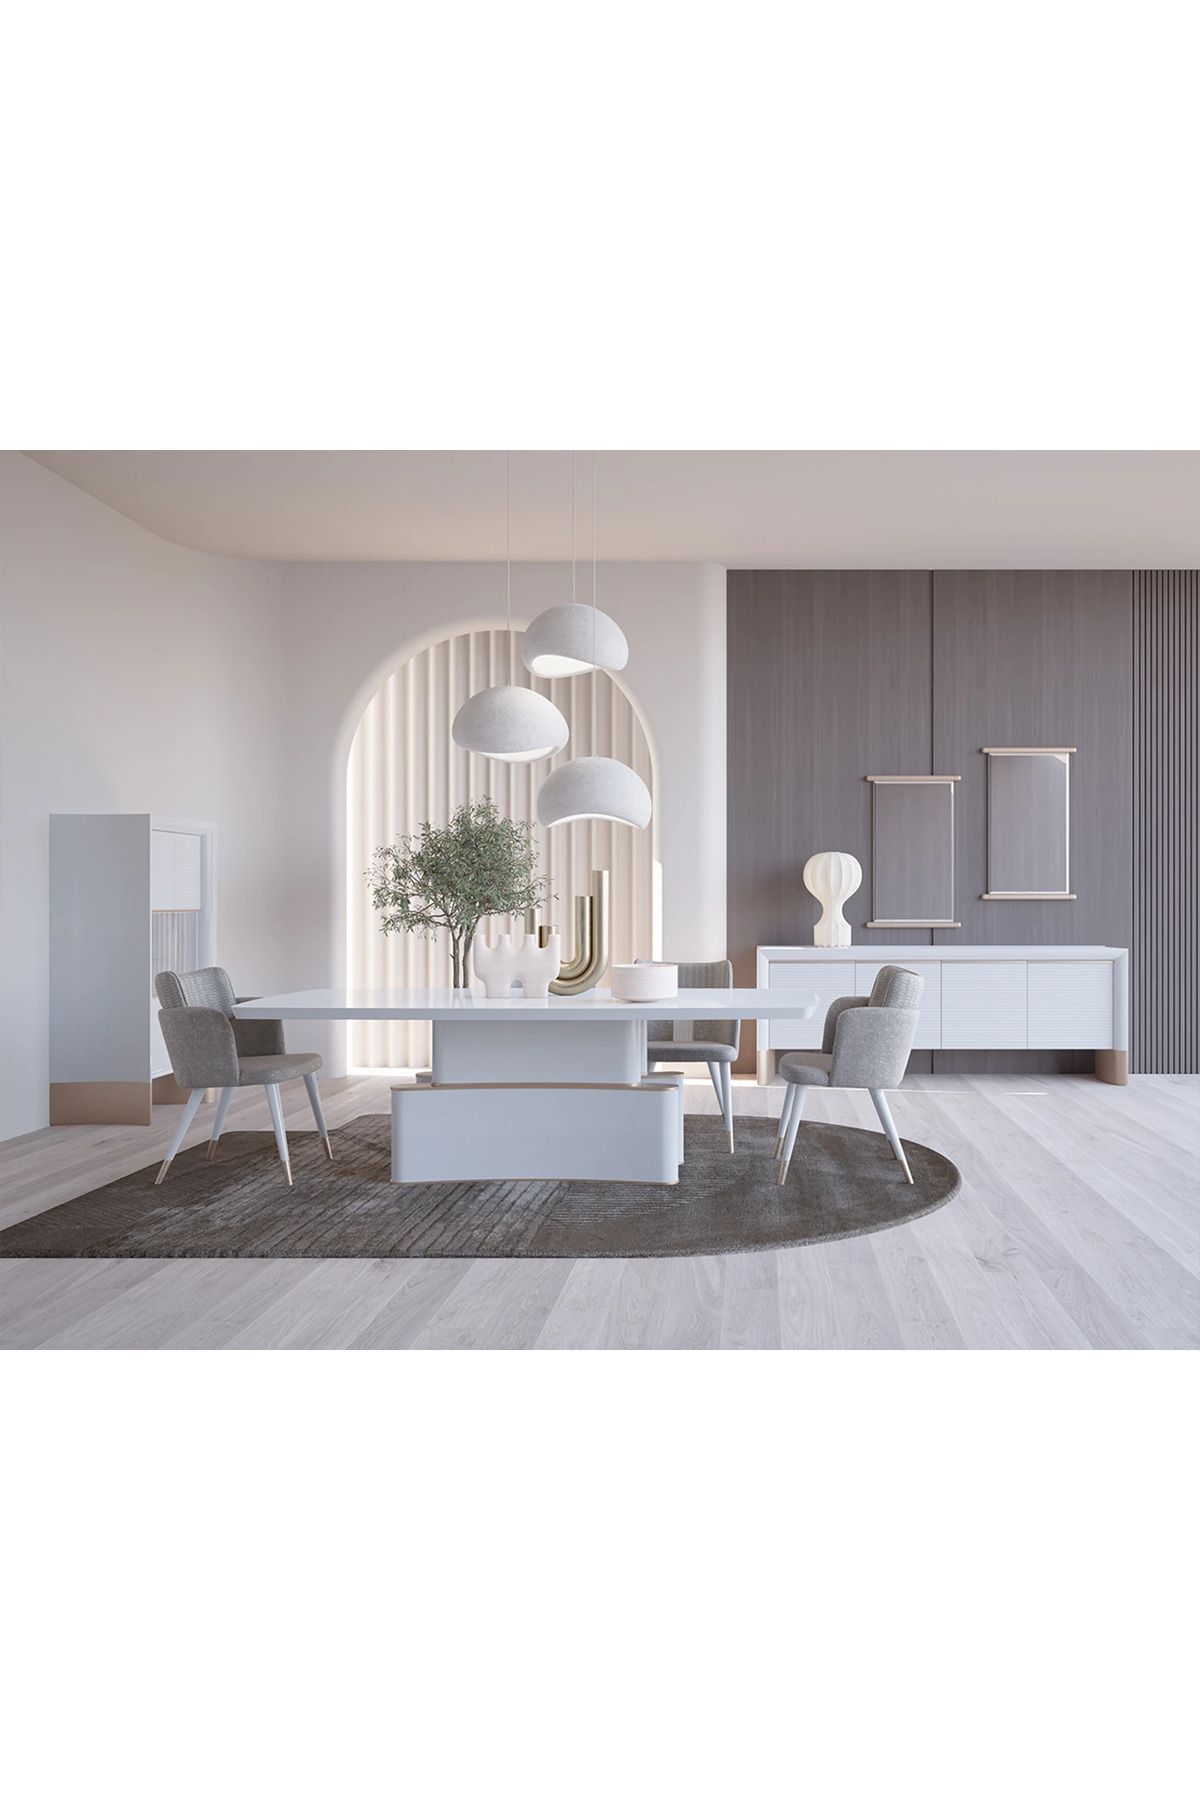 Nill's Furniture Design Laly Masa